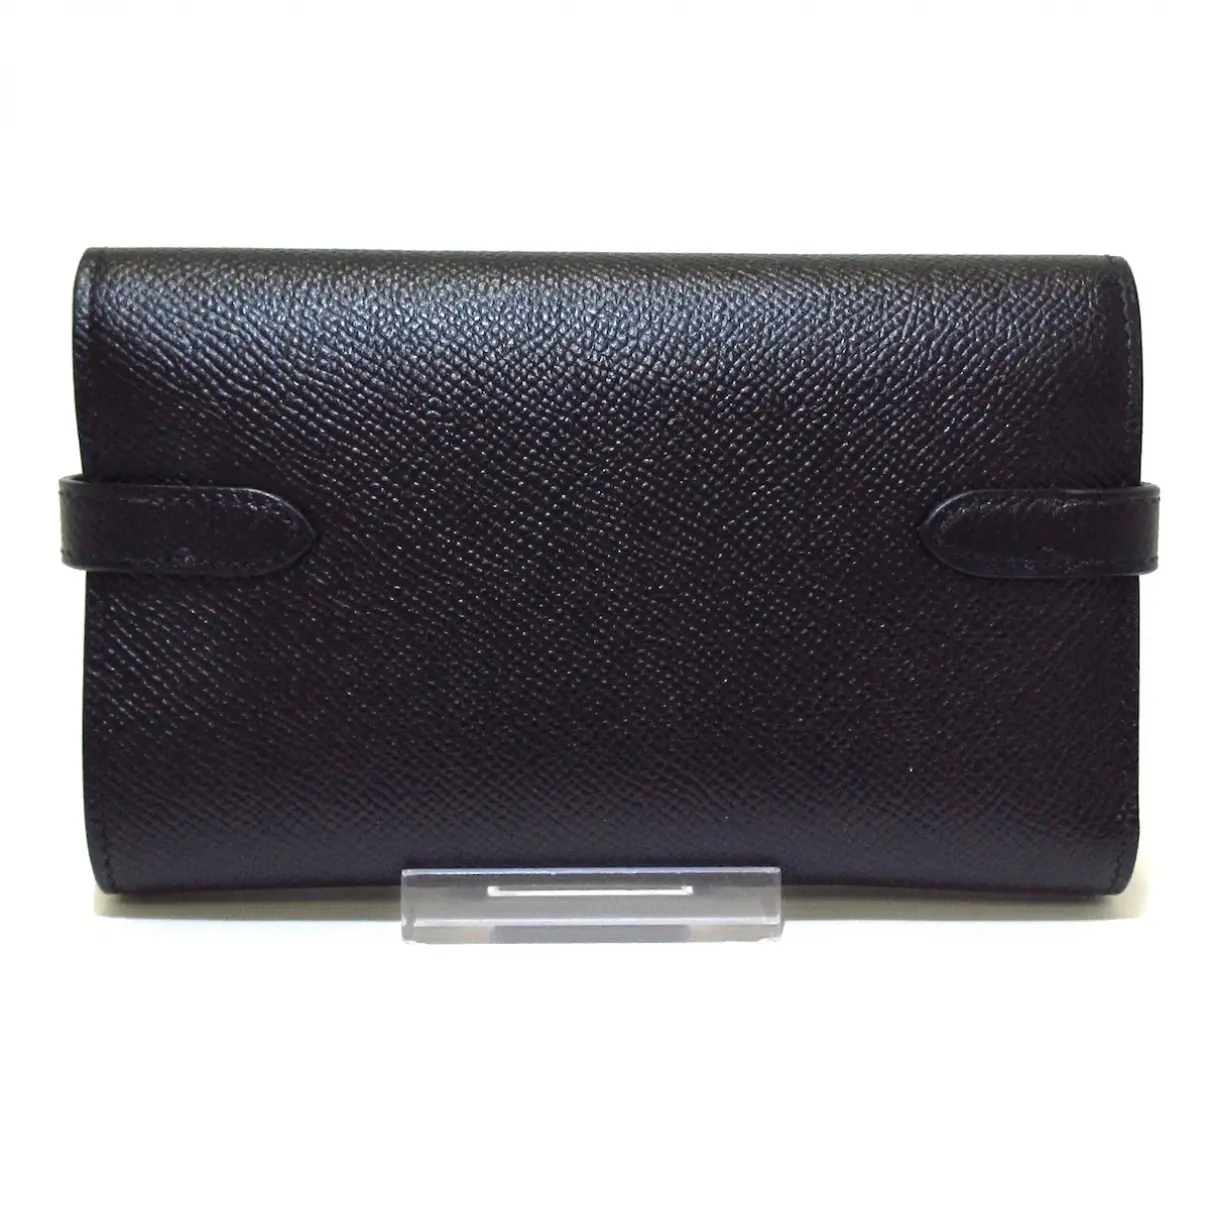 Buy Hermès Kelly leather purse online